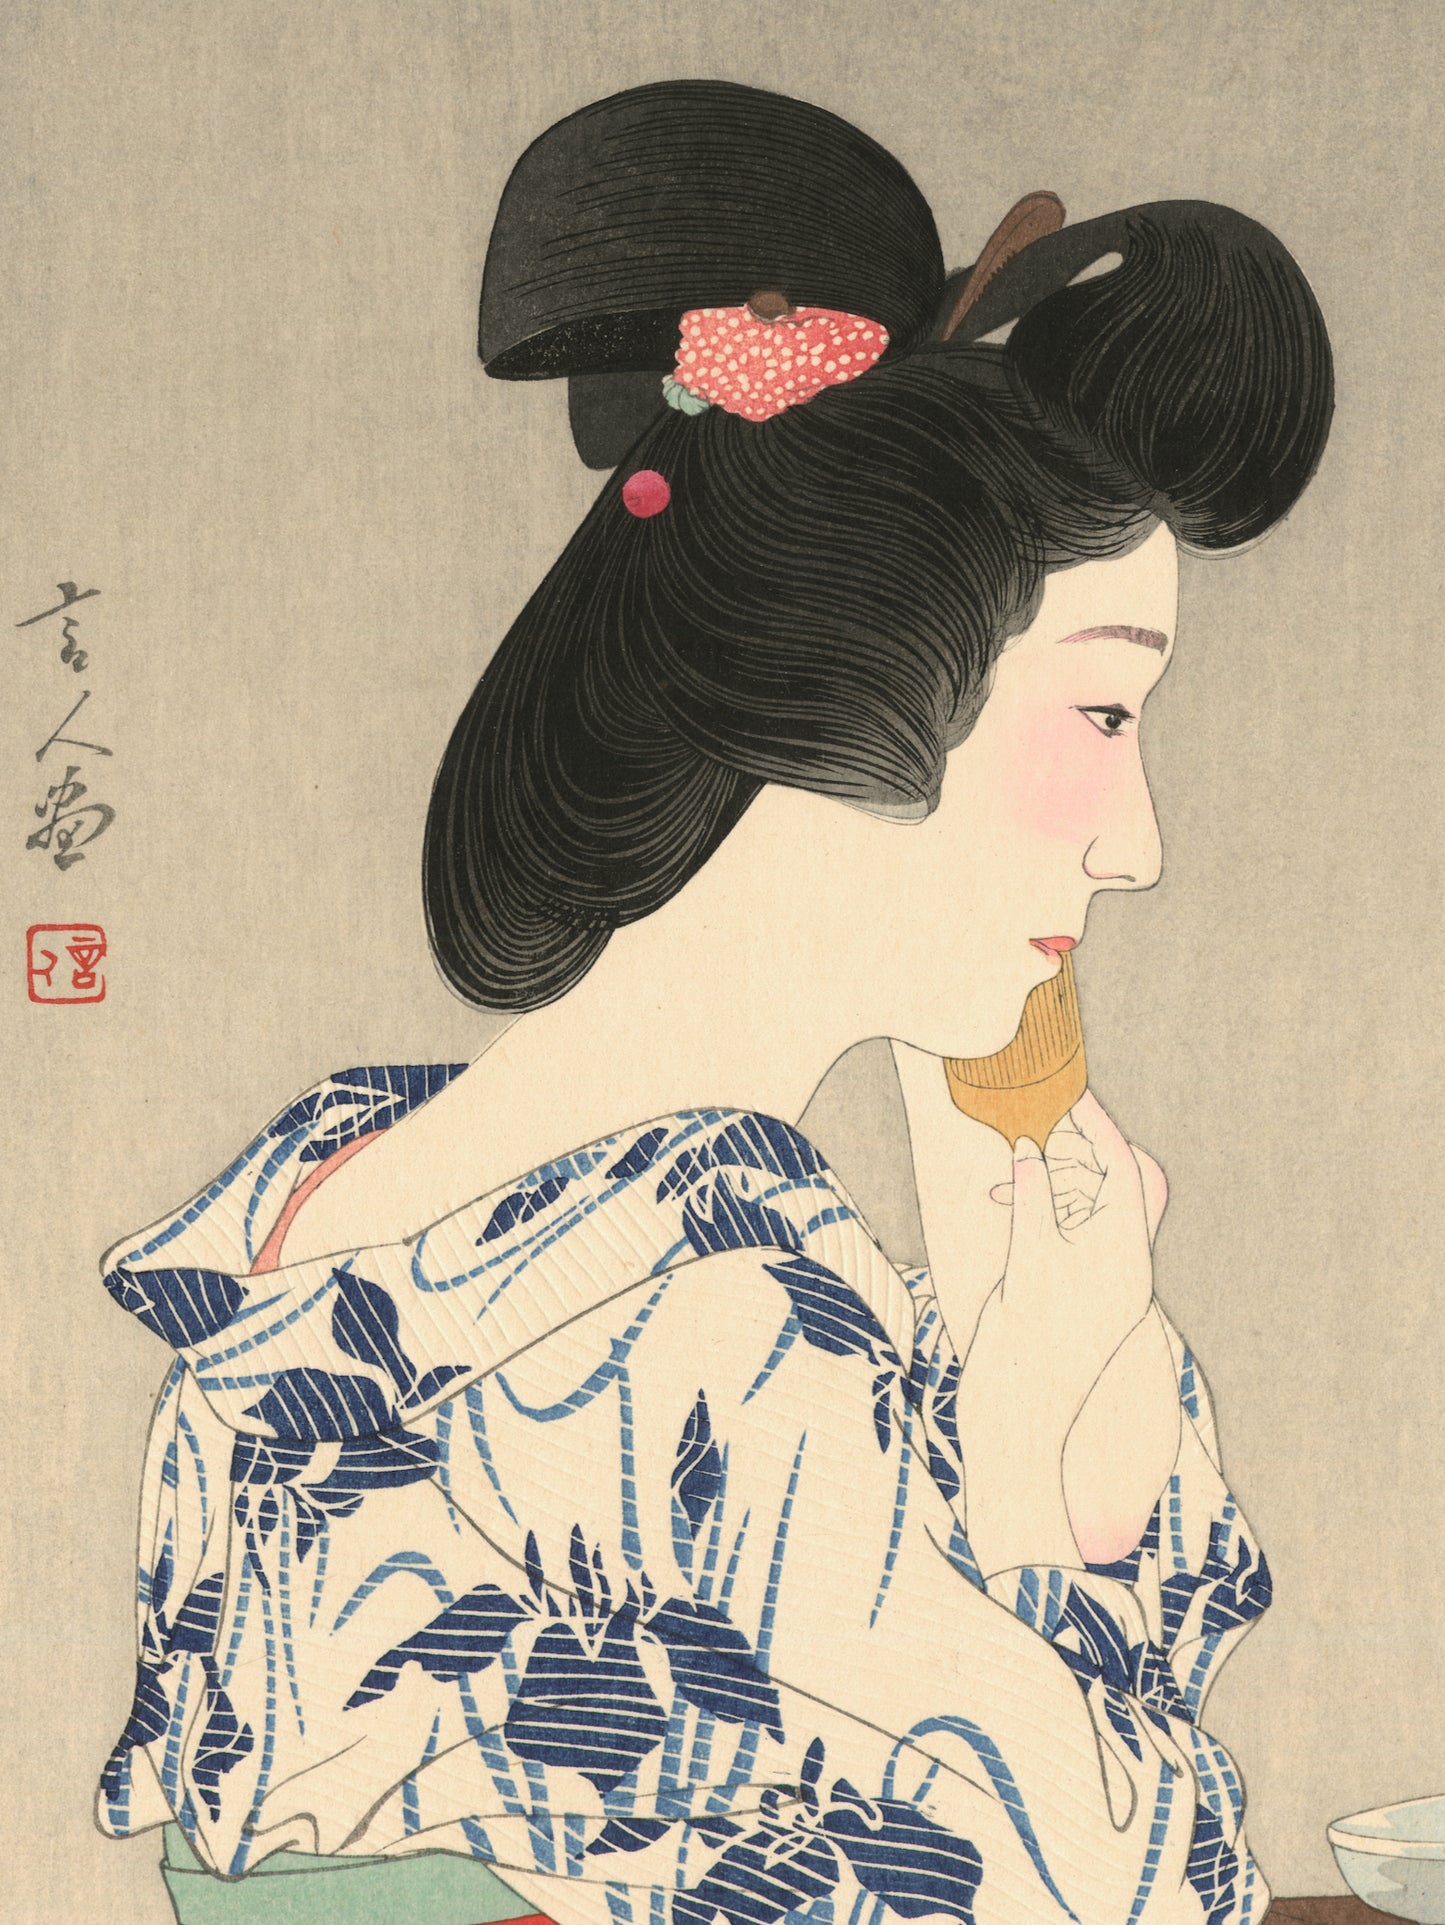 estampe japonaise geisha à genou en yukata devant sa coiffeuse, gros plan visage et signature de l'artiste